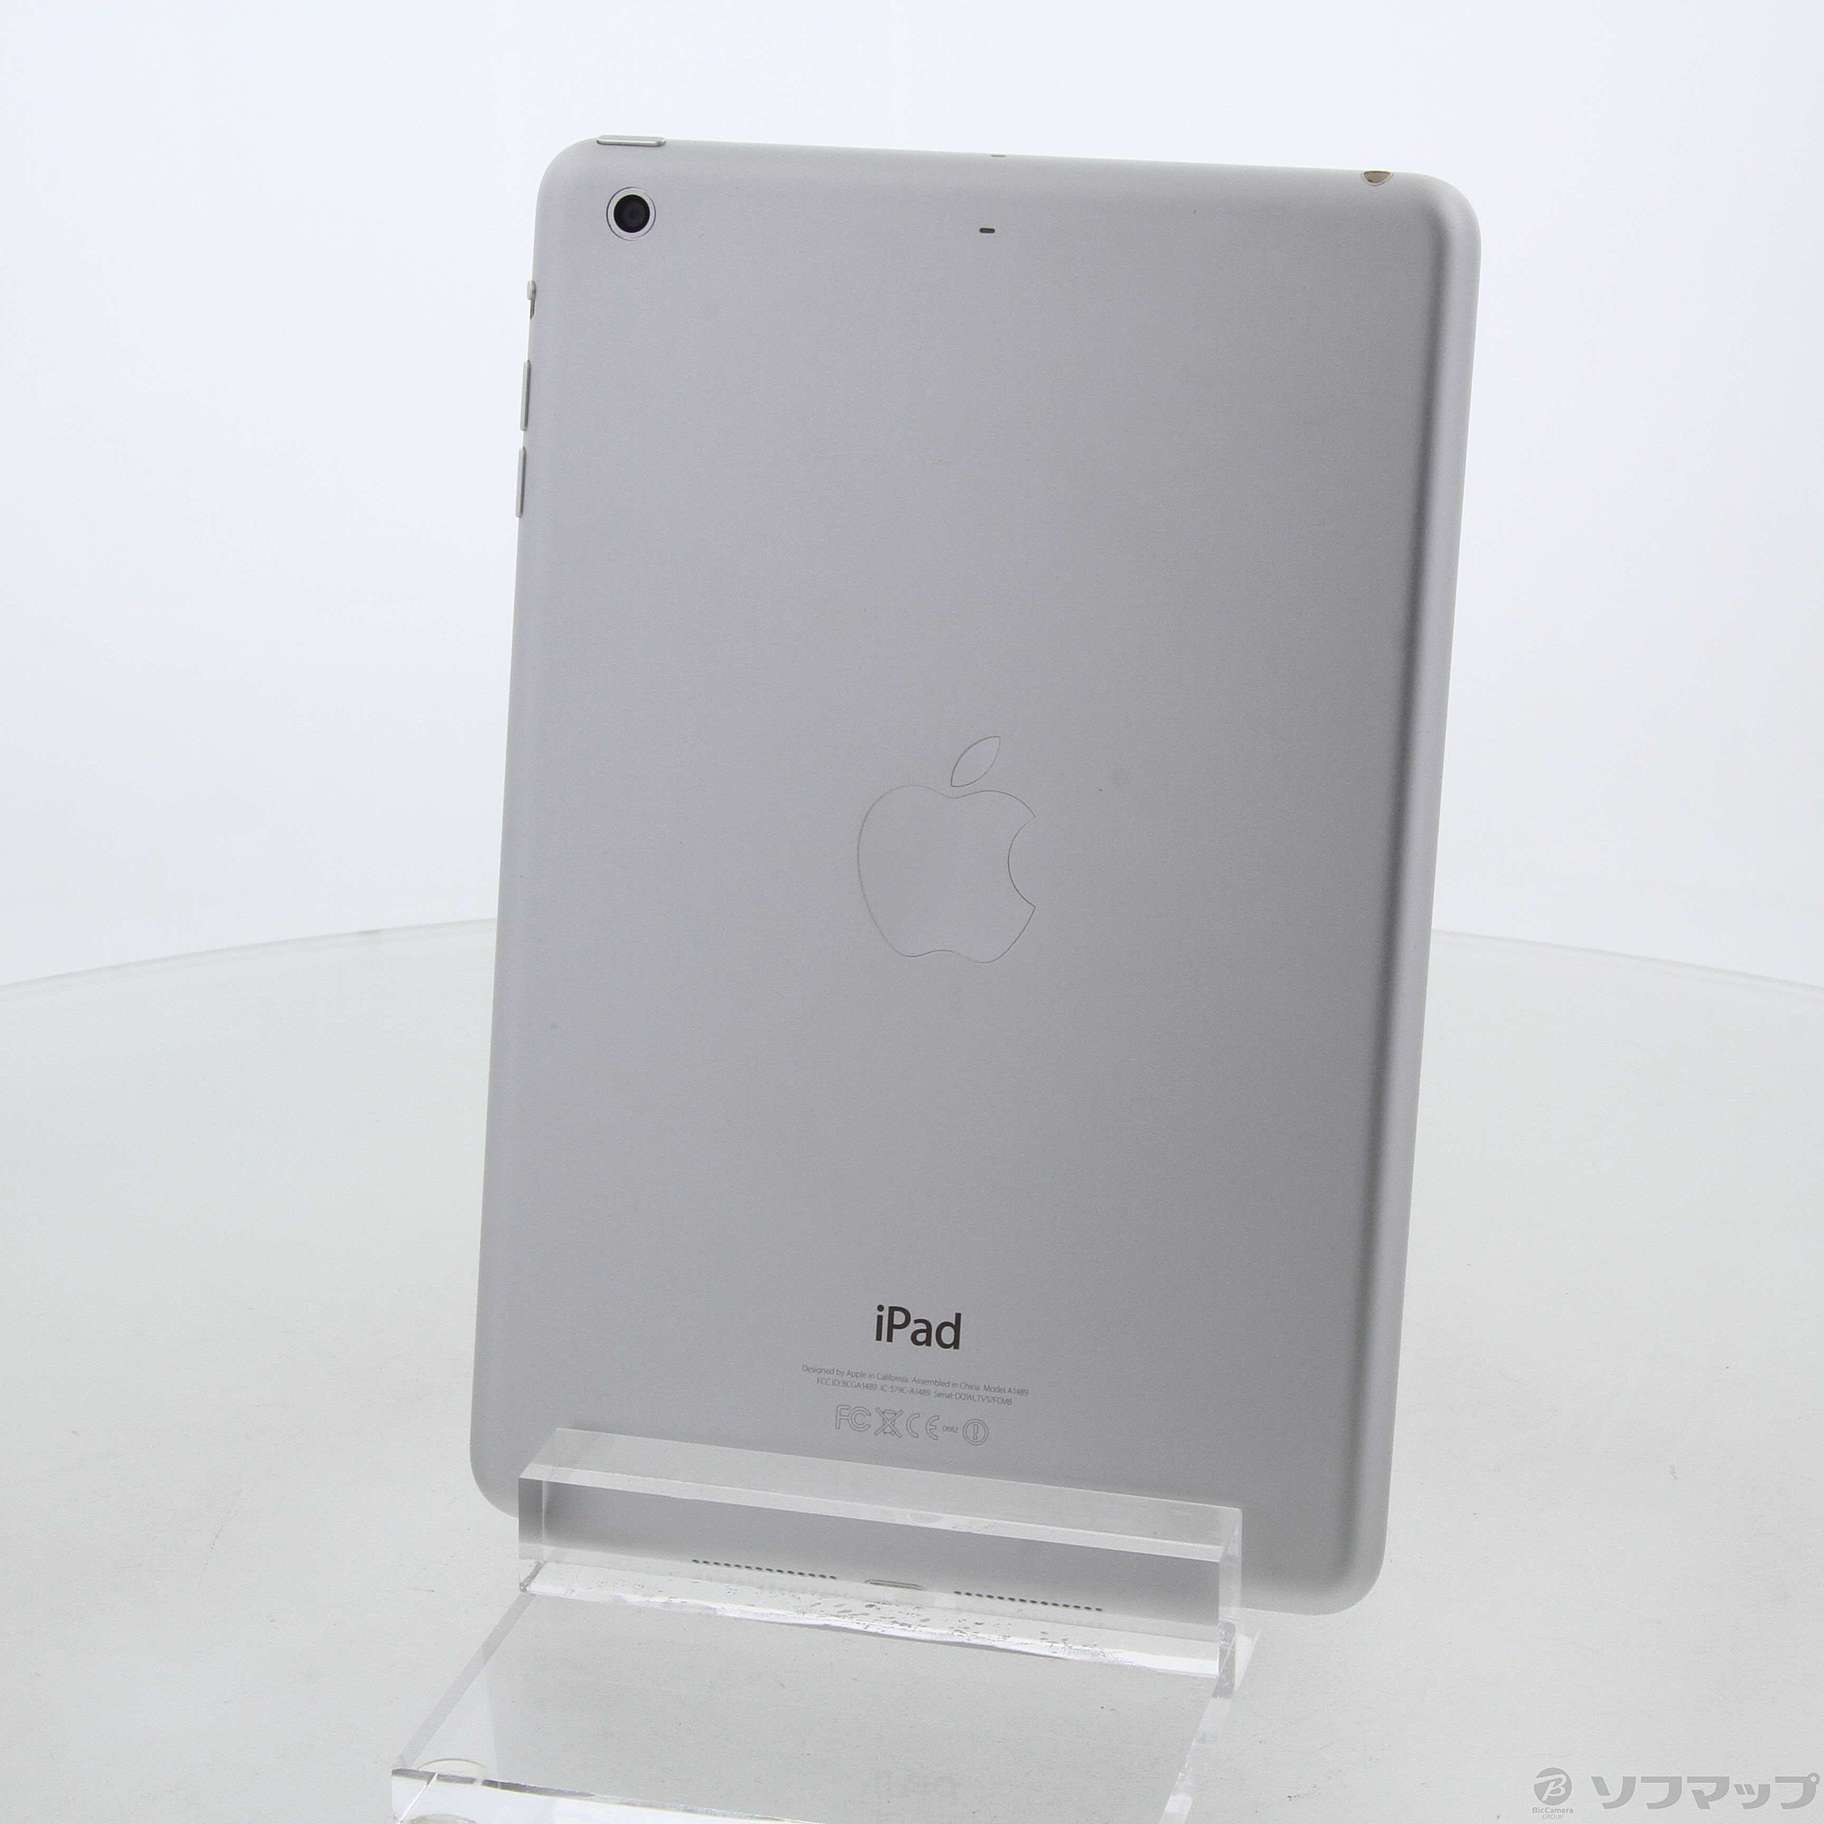 【新品未使用】iPad mini 2 16GB シルバー ME785JPC/タブレット